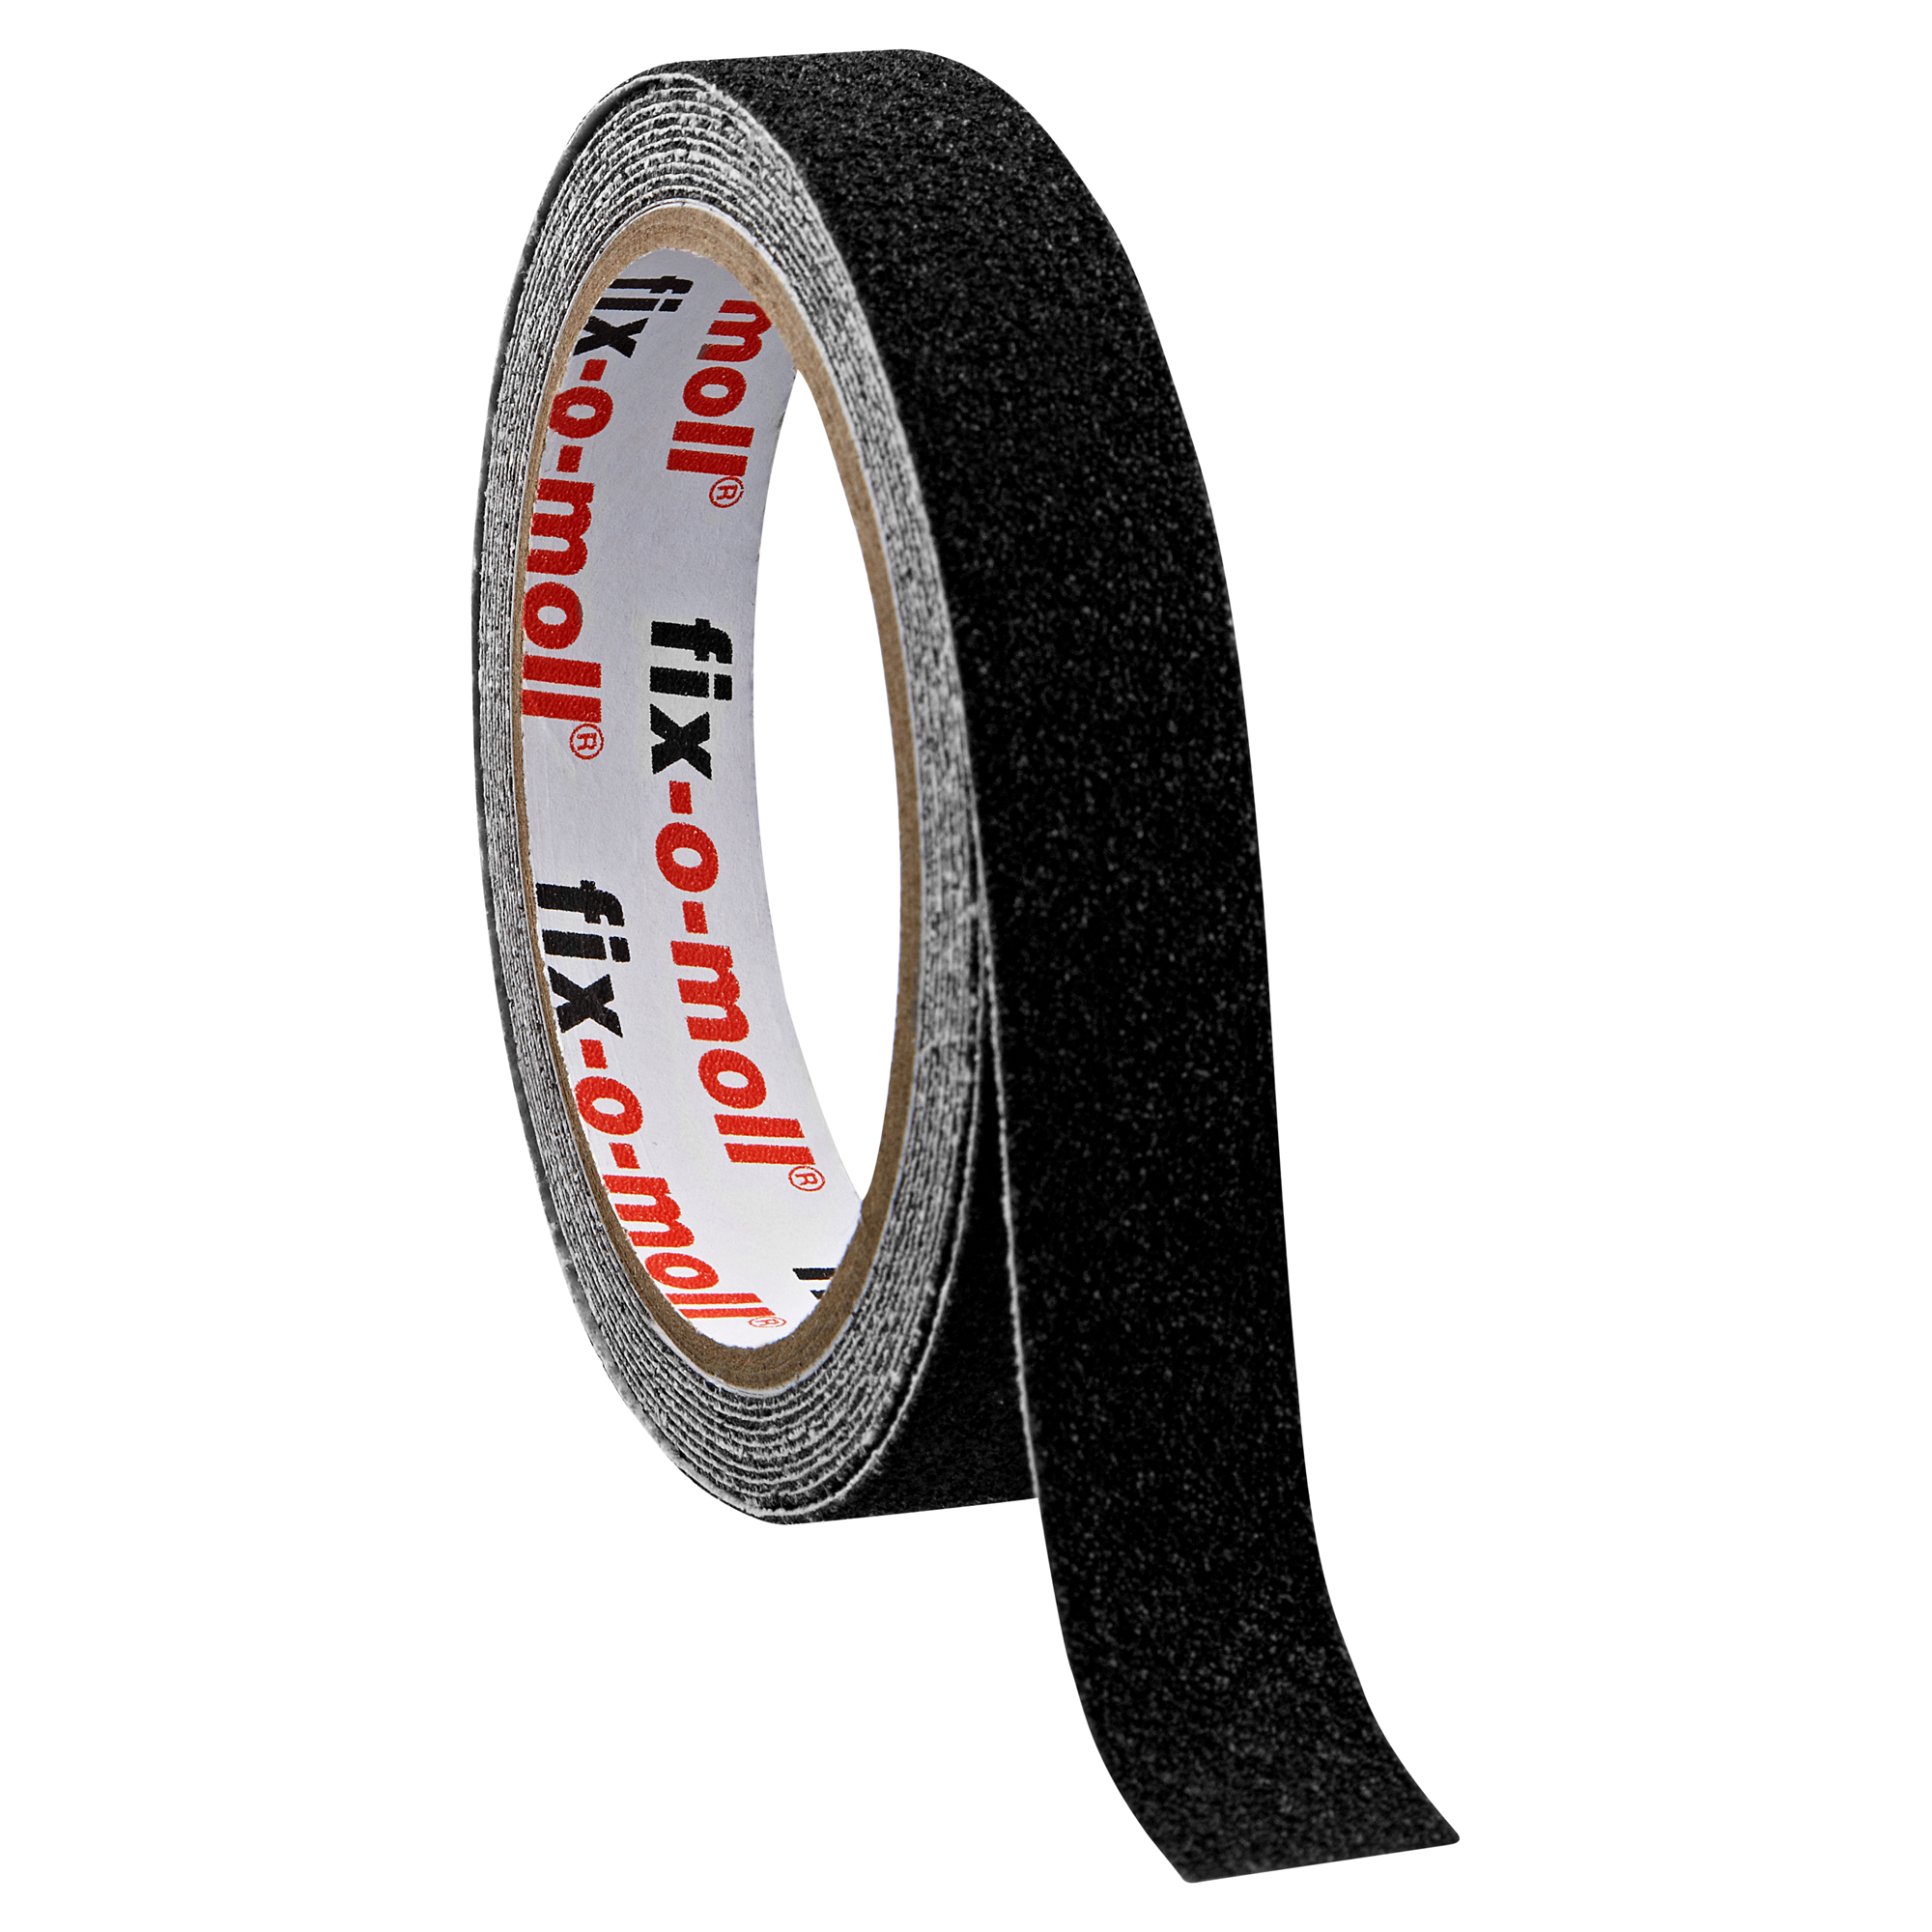 Anti-Rutschband selbstklebend schwarz + product picture